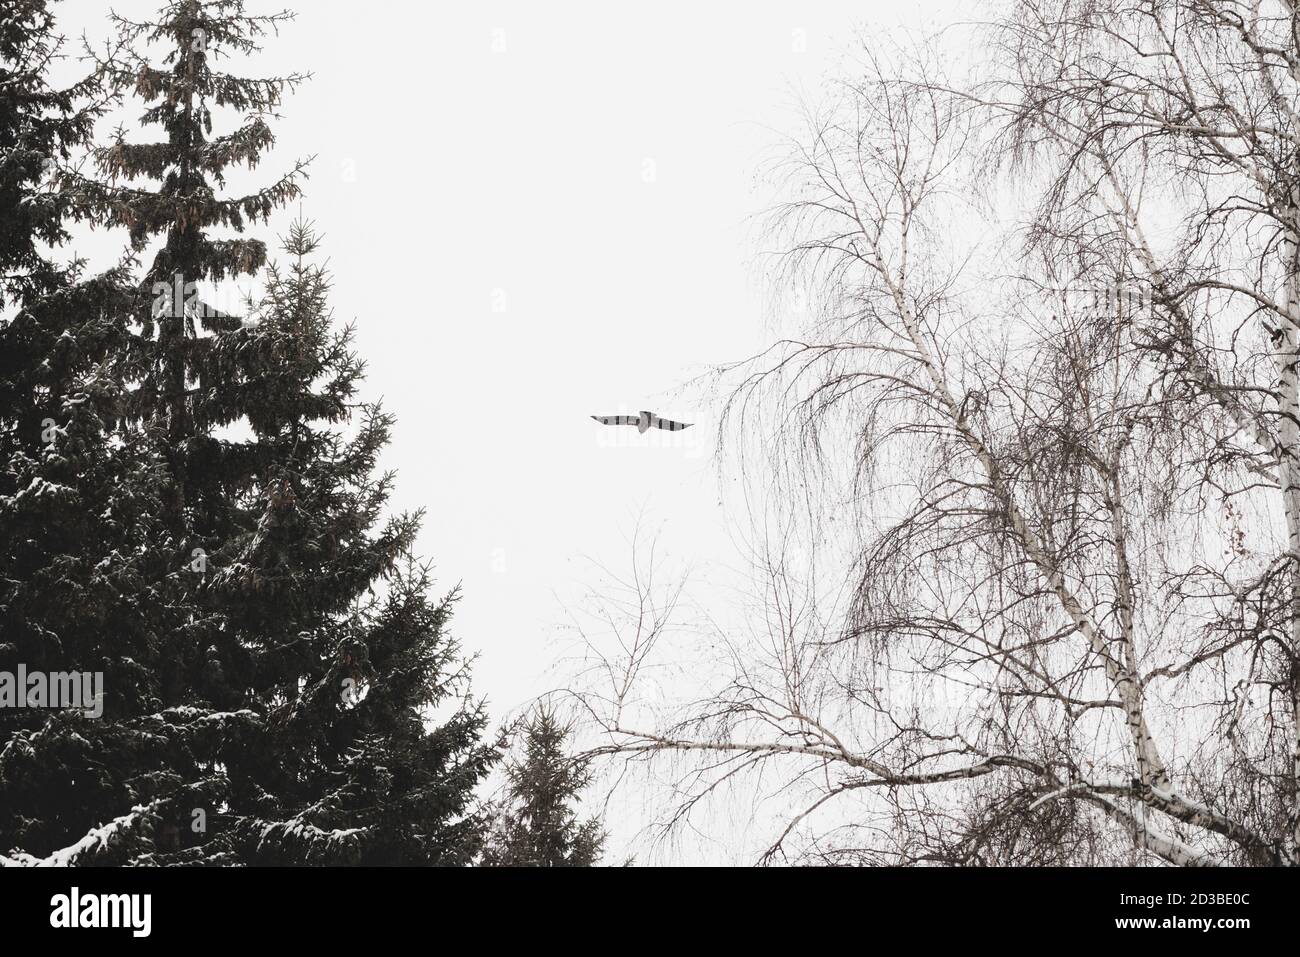 Schwarzer Rabe fliegt über Bäumen auf der Jagd. Stimmungsvolle Landschaft mit Nadelbäumen und Laubbäumen im Schnee, mit dunkler Krähe am grauen Himmel, mit Kopierraum. Stockfoto